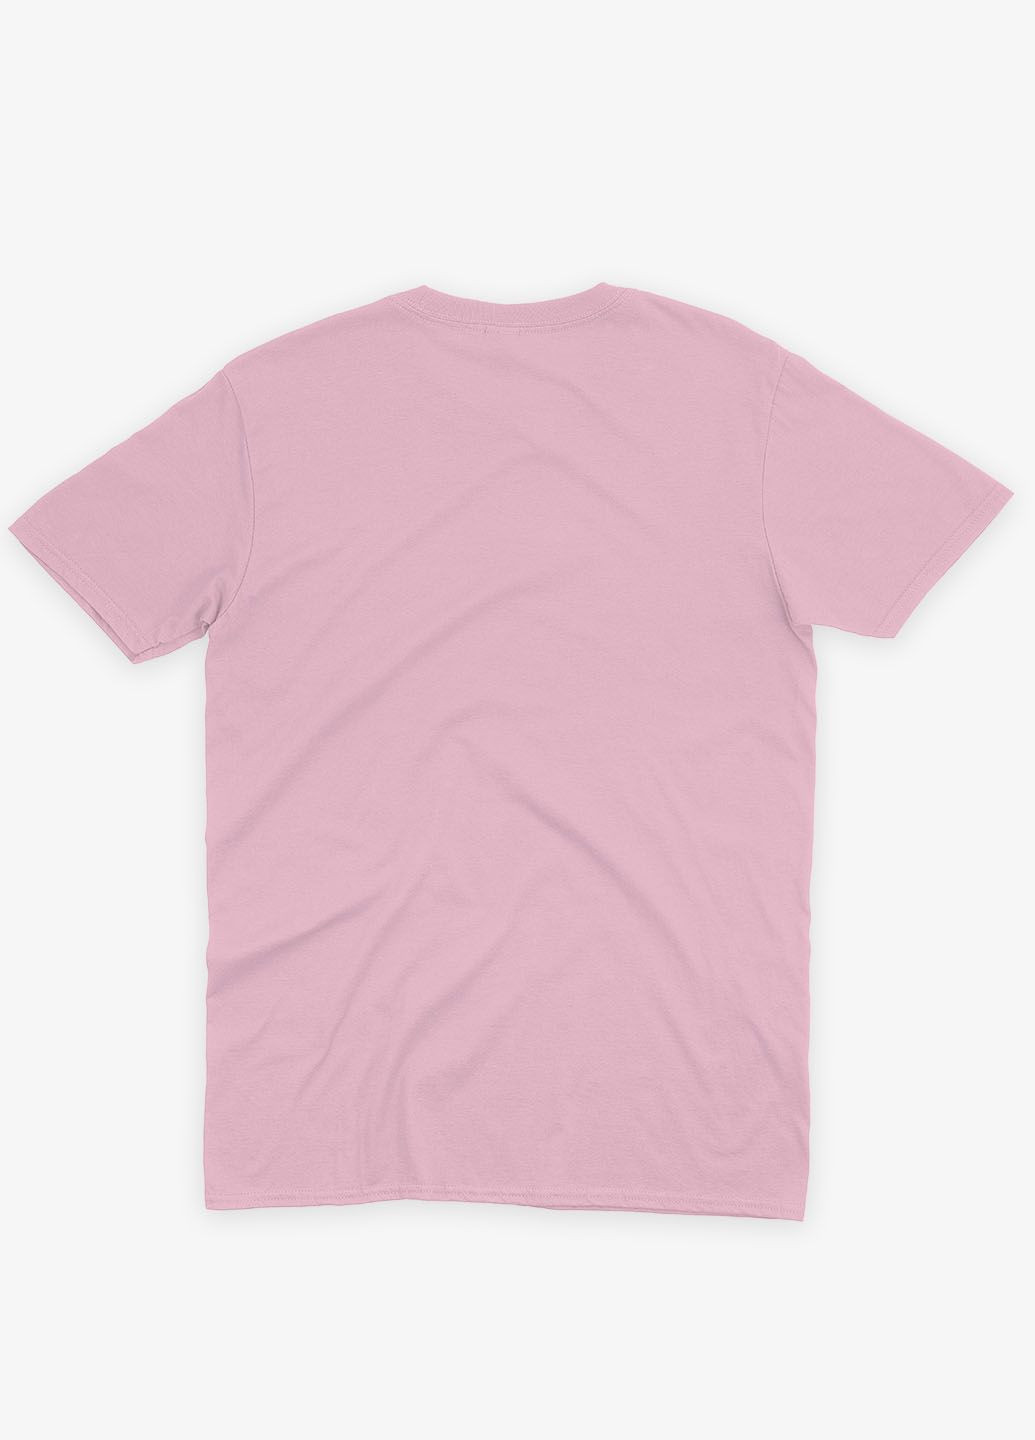 Розовая демисезонная футболка для мальчика с патриотическим принтом блидо- (ts001-5-lpinkj-005-1-114) Modno